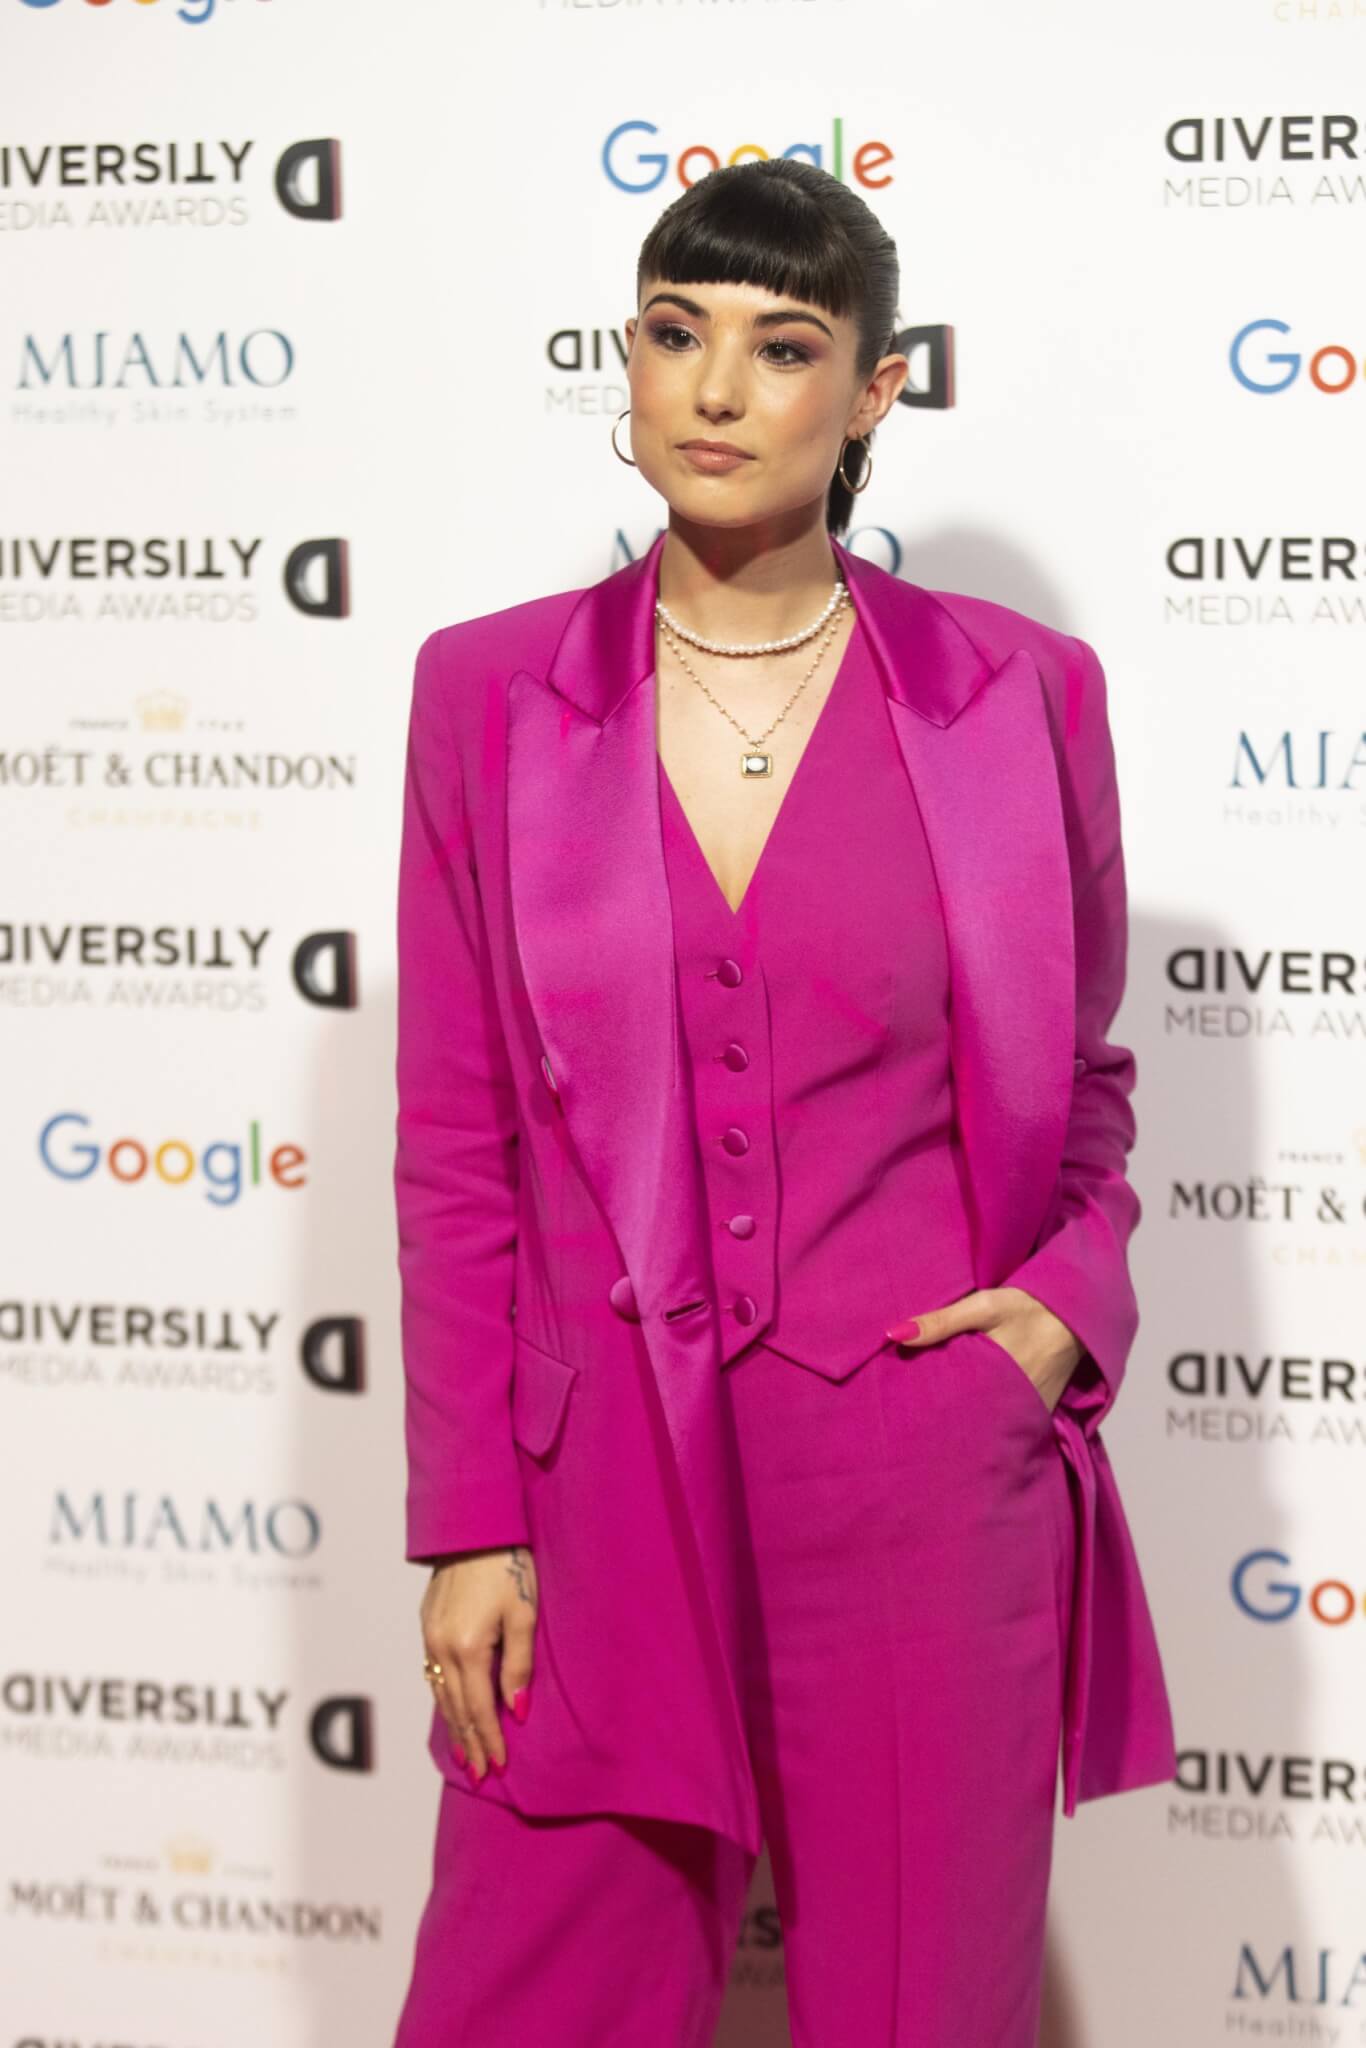 Diversity Media Awards Giorgia Soleri